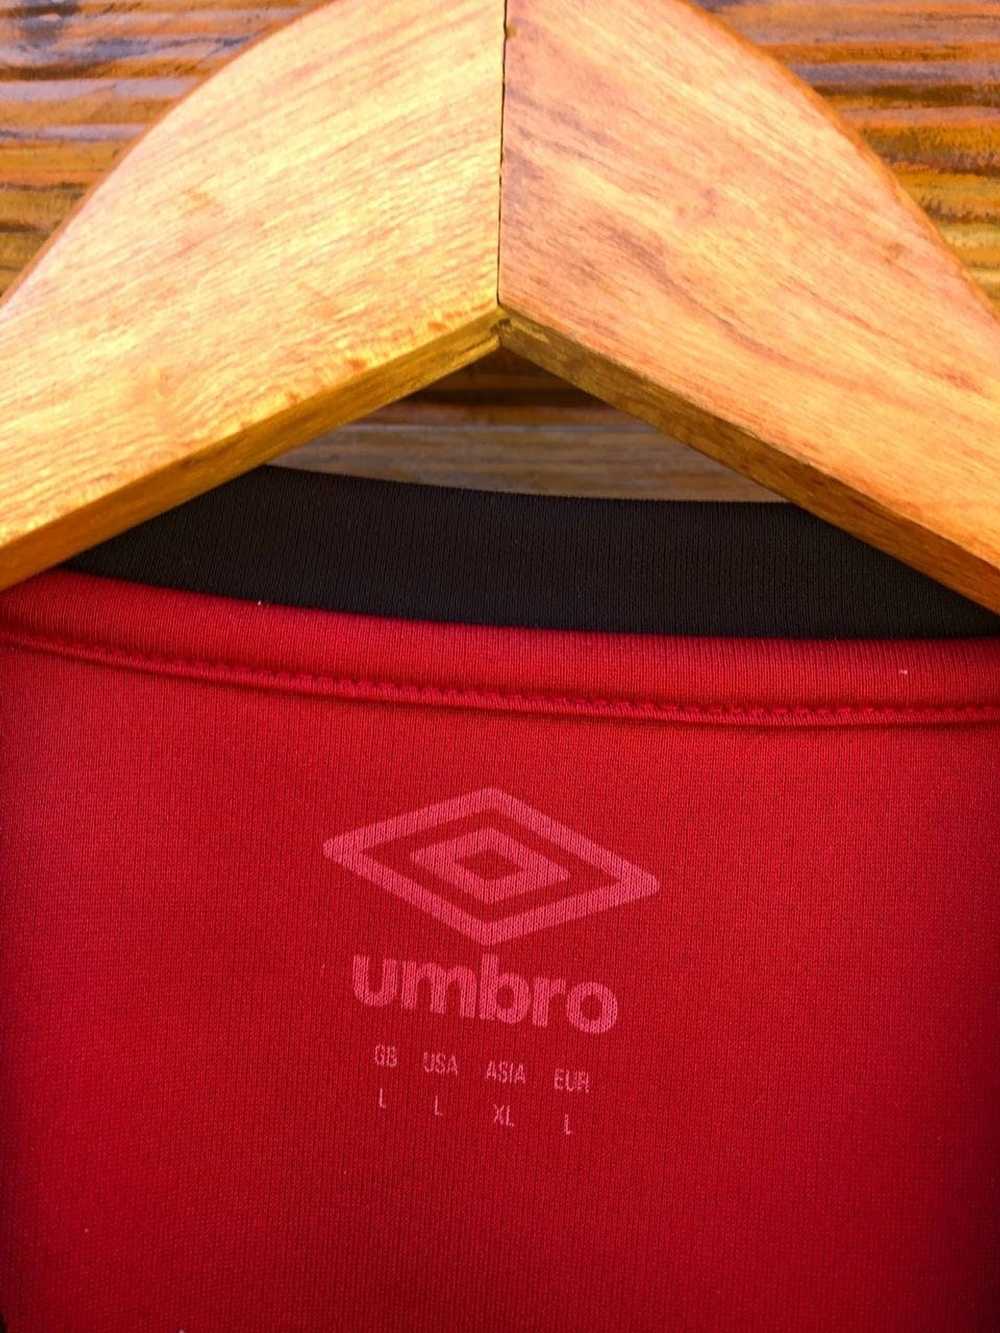 Soccer Jersey × Umbro × Vintage Umbro AFC Bournem… - image 4